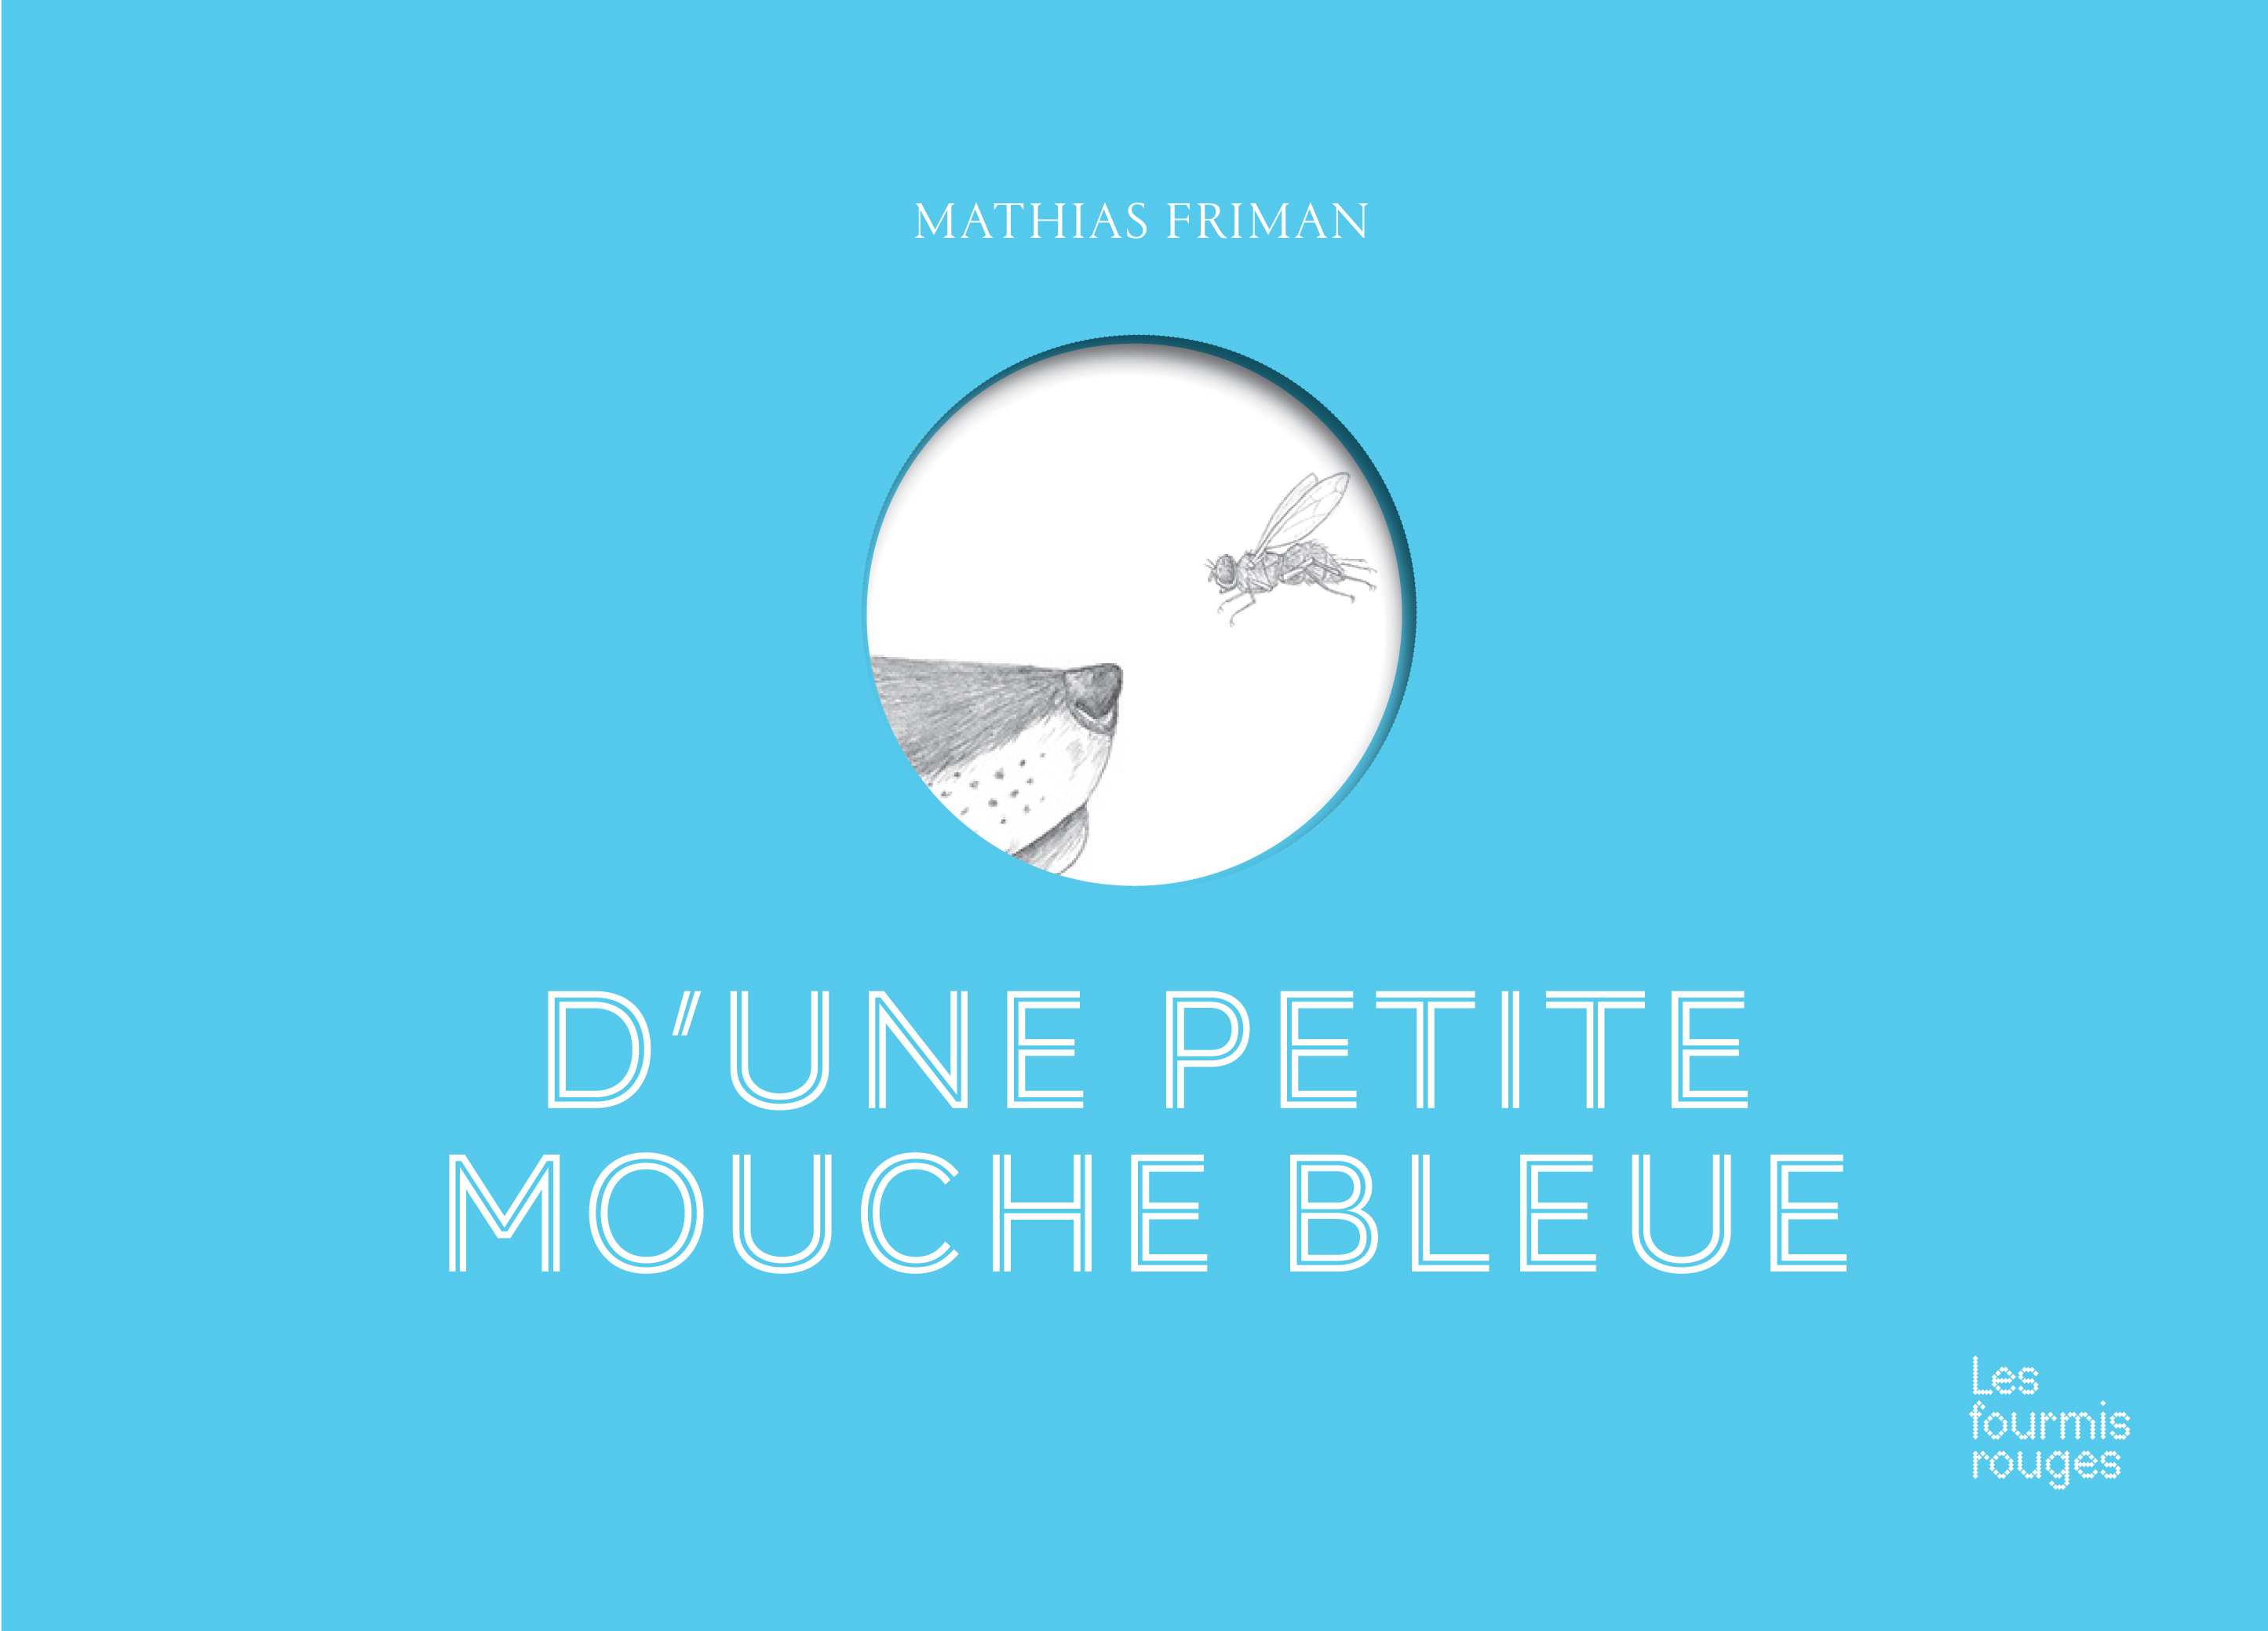 Dune-petite-mouche-bleue-COUV